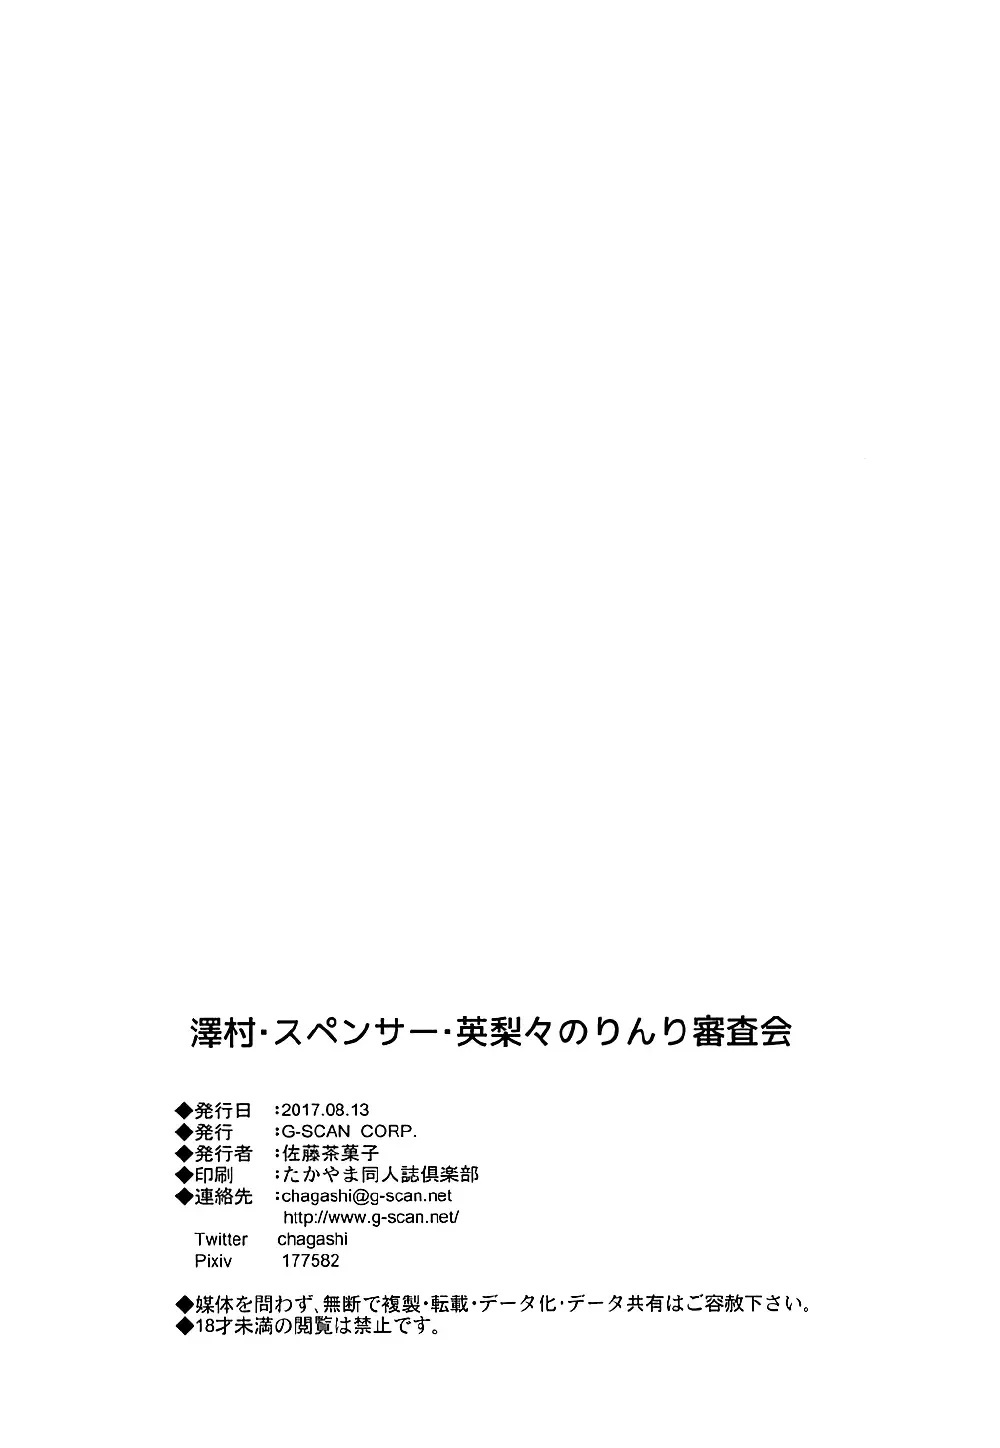 SAWAMURA SPENCER ERIRI UTAHA KASUMIGAOKA MICHIRU HYOUDOU AND KATO MEGUMI NO RINRI SHINSAKAI (PART 1) - 95